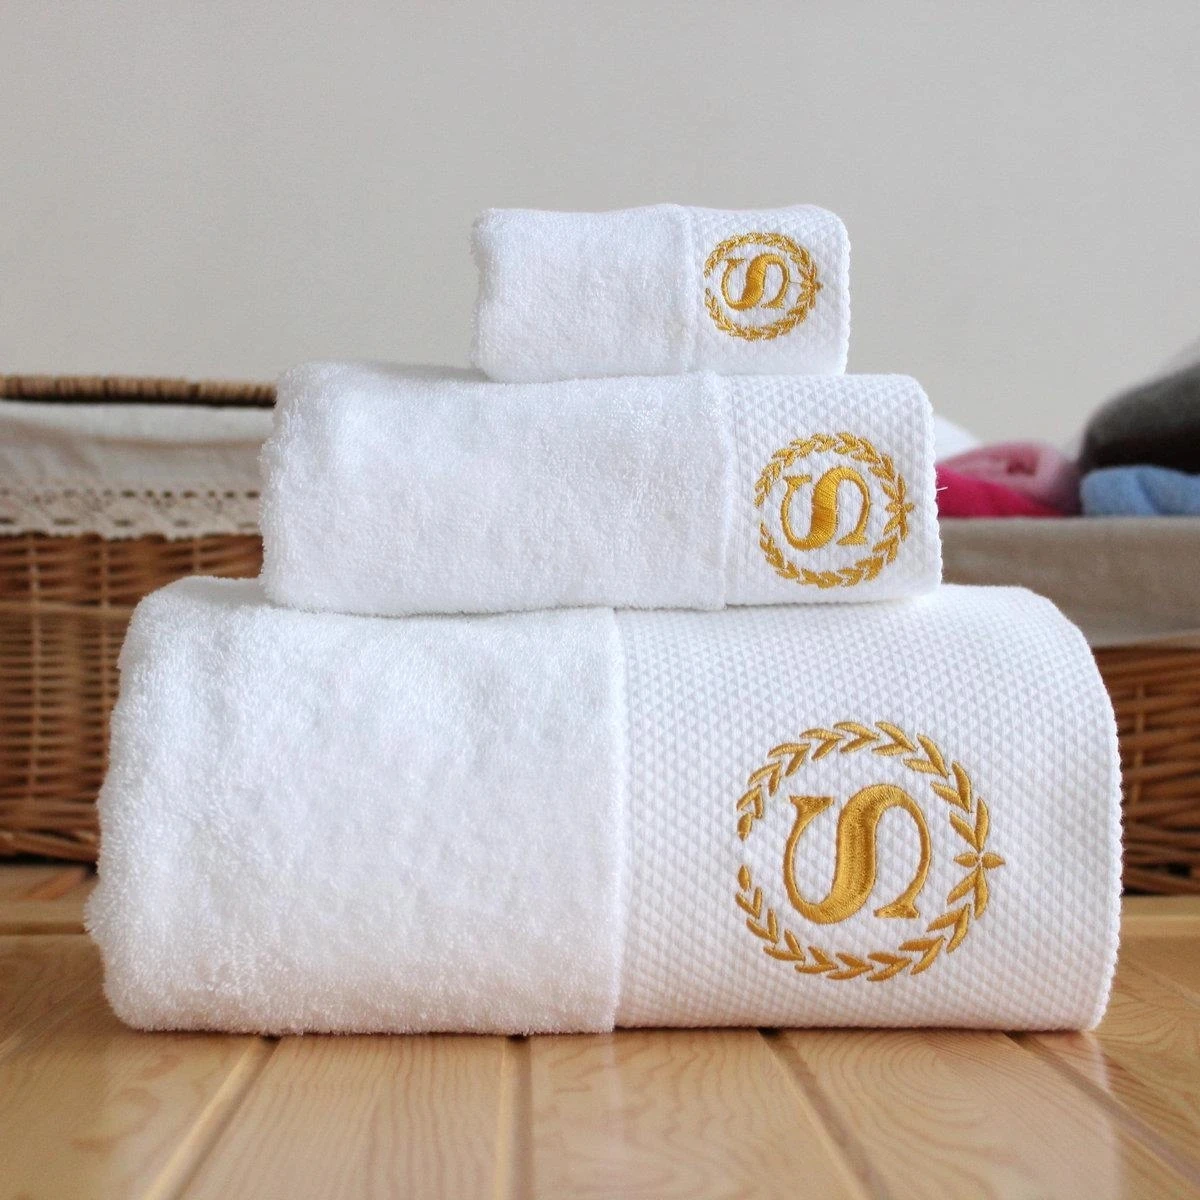 Toalla blanca de algodón personalizada para Hotel, Toalla de baño bordada personalizada para playa, regalo empresarial con logotipo